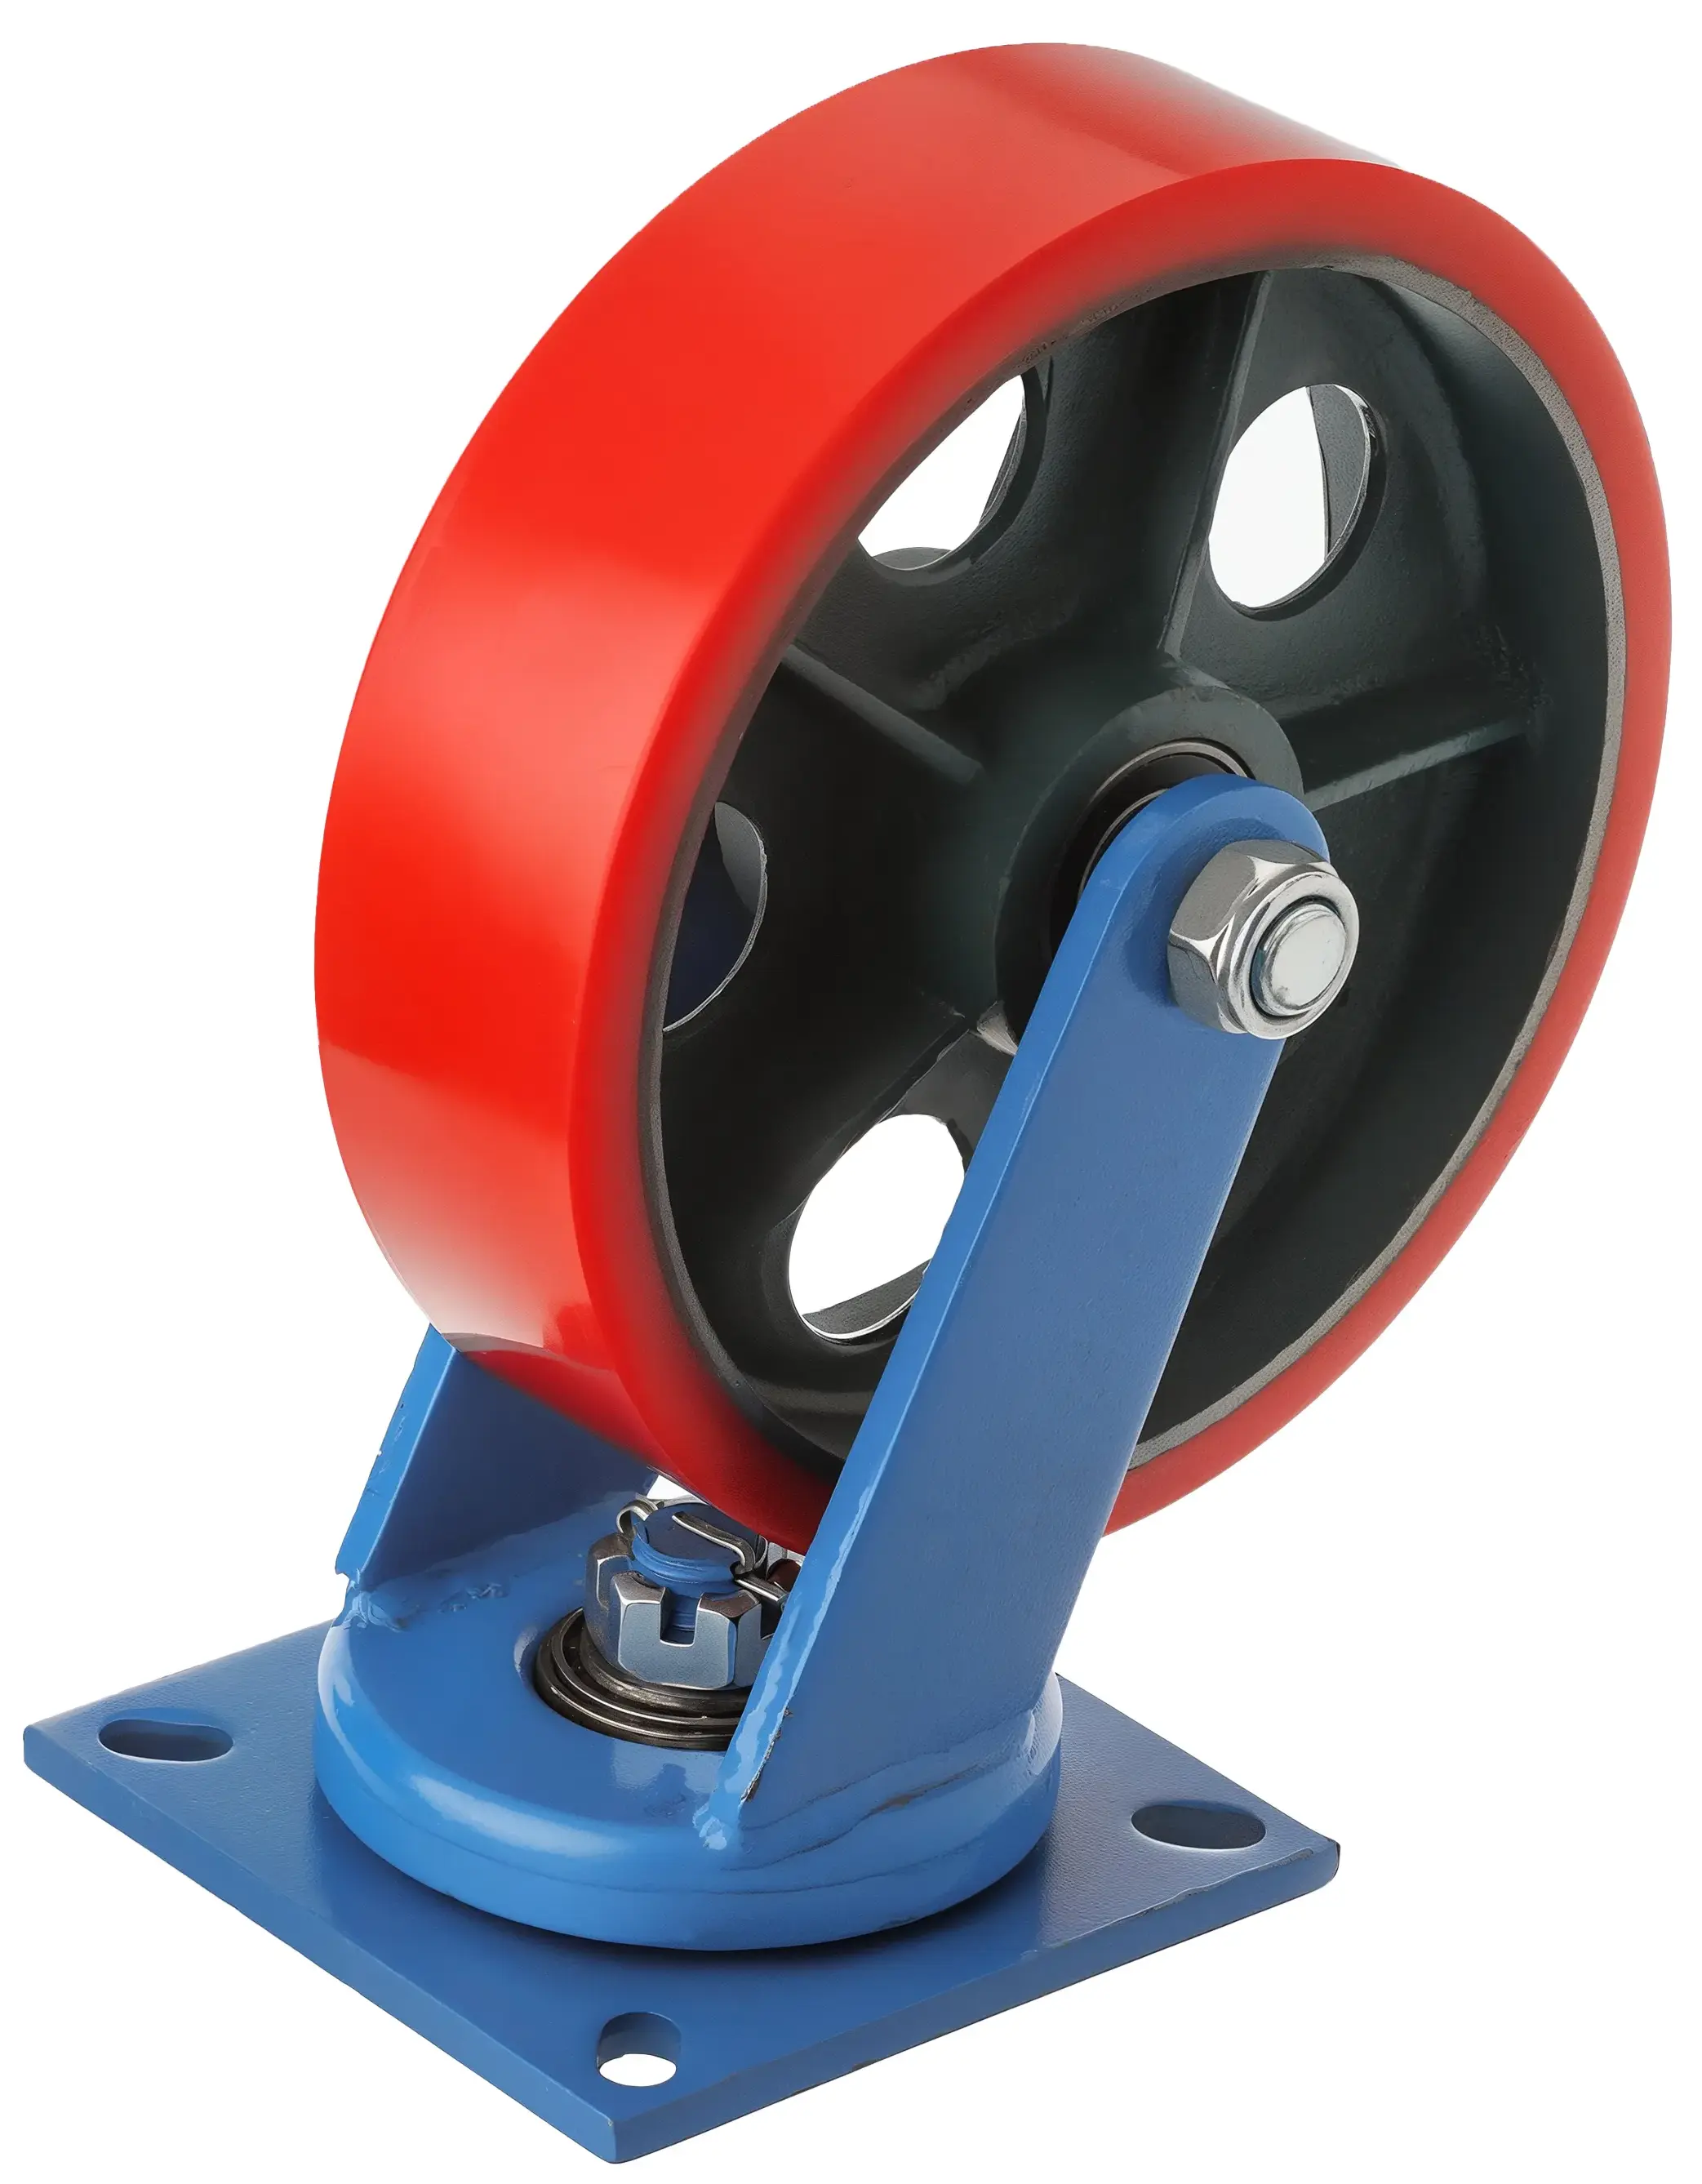 SHpo85 - Сверхбольшегрузное полиуретановое колесо 250 мм, 950 кг (площадка, поворотн., шарикоподш.)